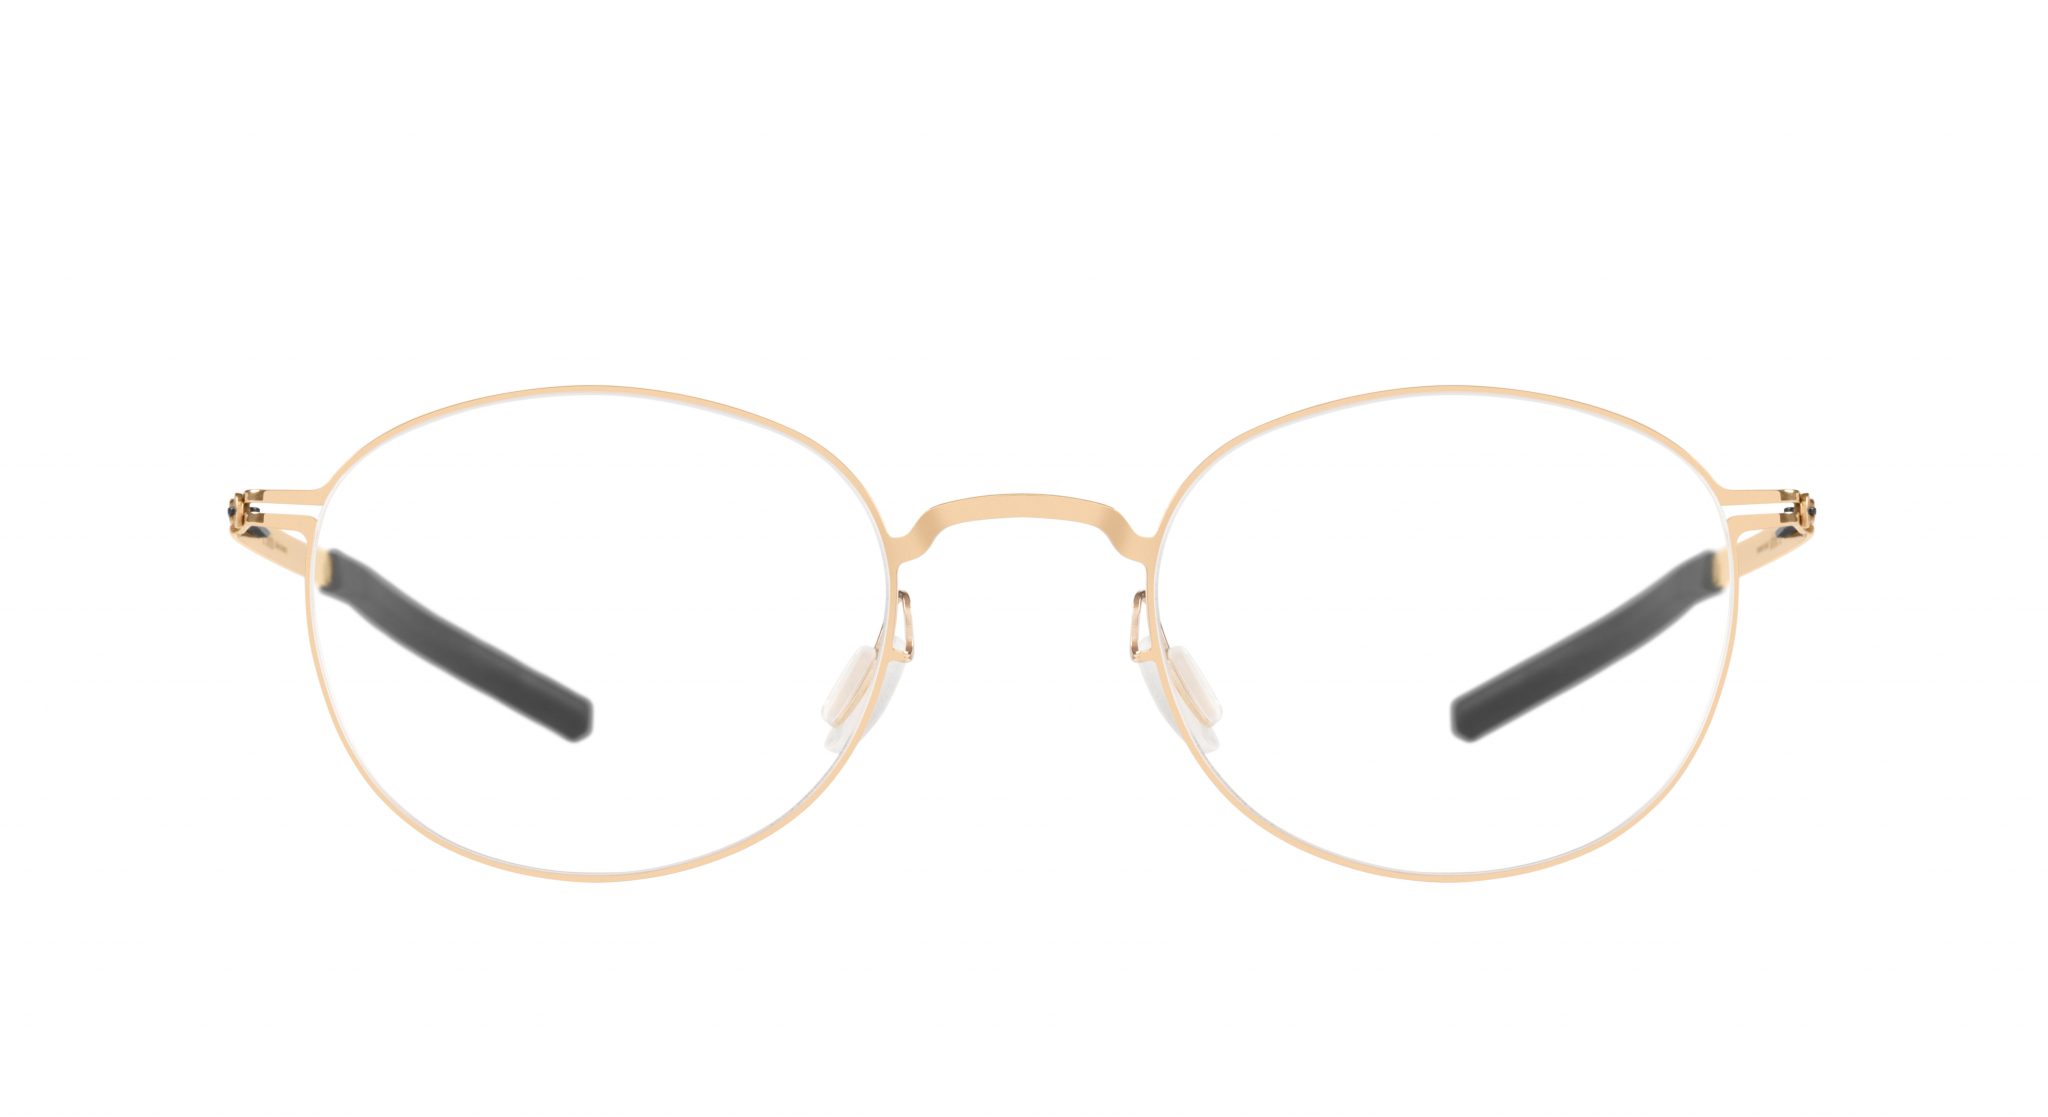 New ic! berlin frames - Evershine Optical